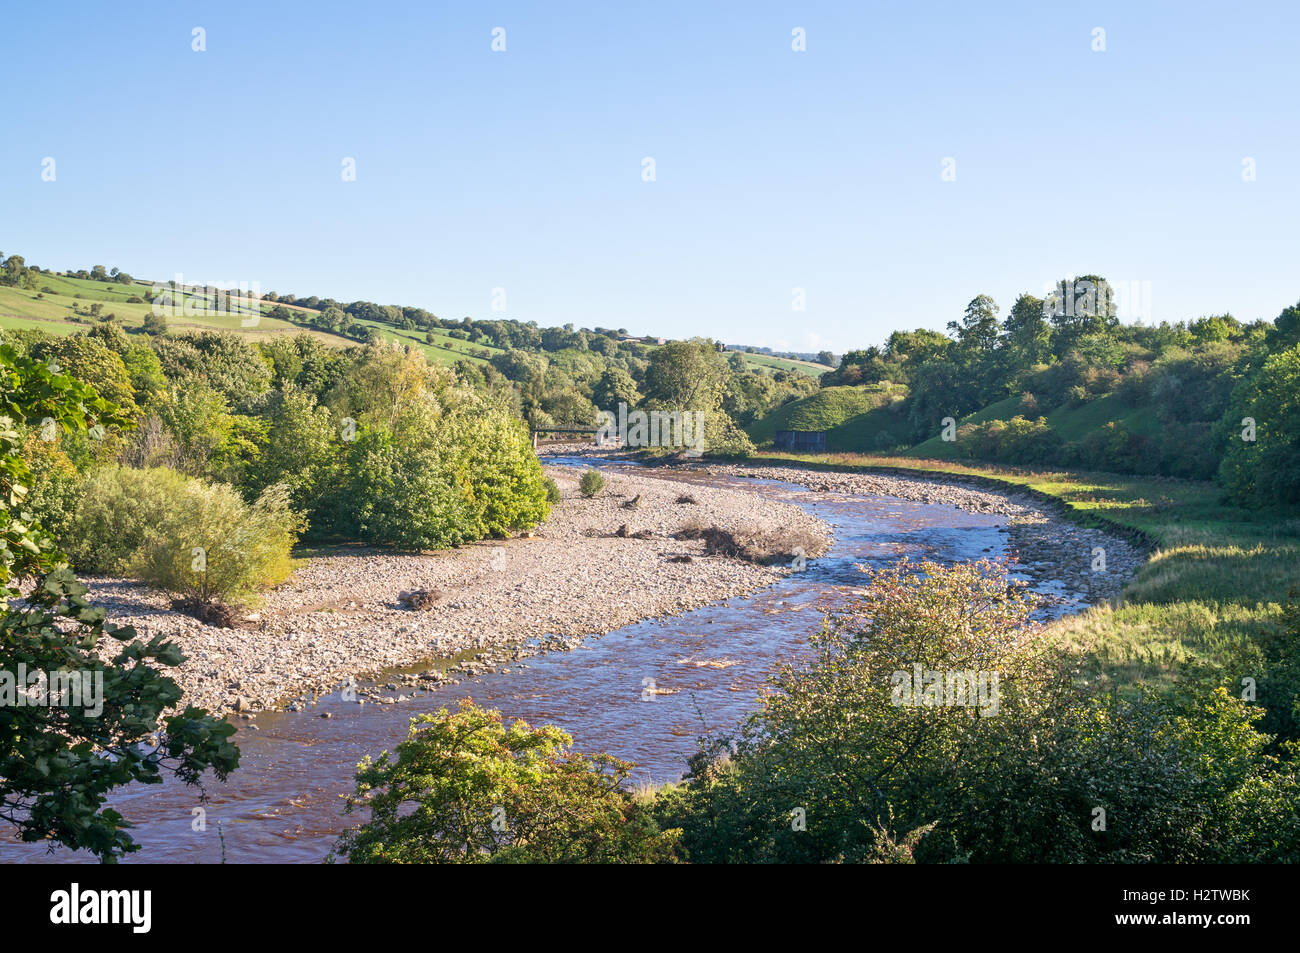 The river Wear near Frosterley, Weardale, Co. Durham, England, UK Stock Photo